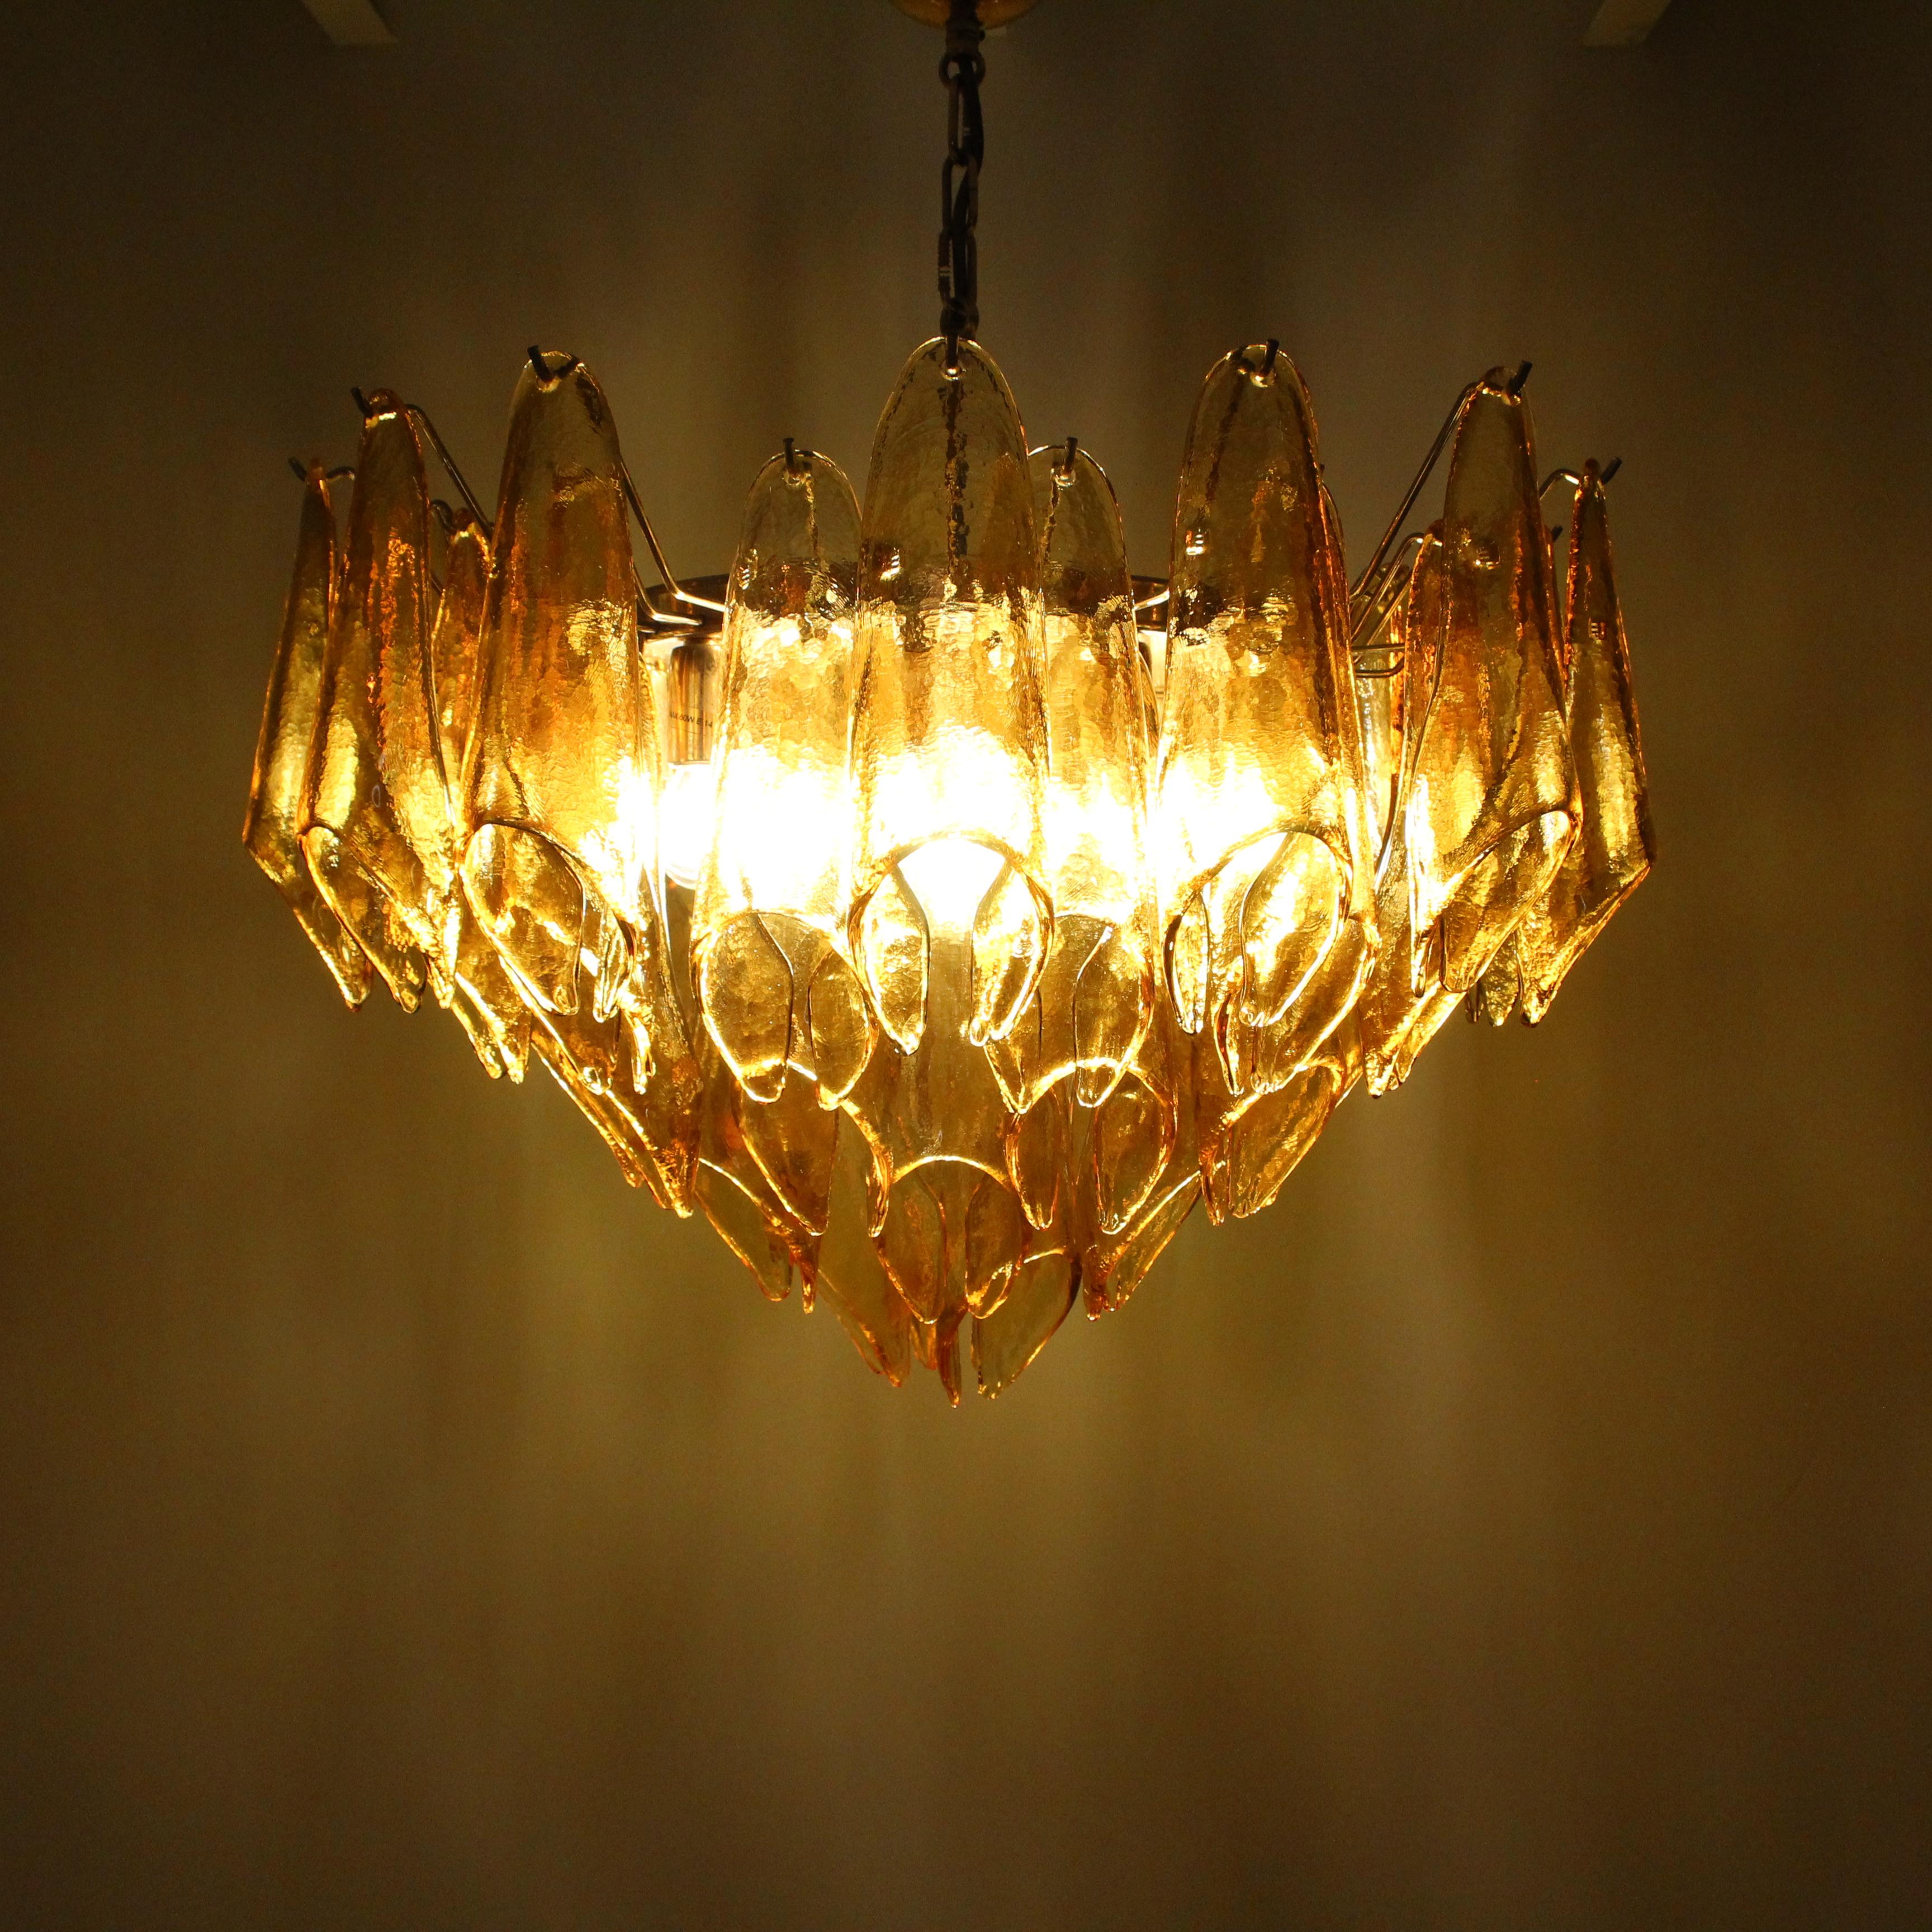 Le magnifique lustre orné d'éléments en verre jaune de Murano est un chef-d'œuvre d'une rare beauté, réalisé par le fabricant réputé La Murrina. Cette création lumineuse incarne le savoir-faire artisanal vénitien qui fait la renommée de la